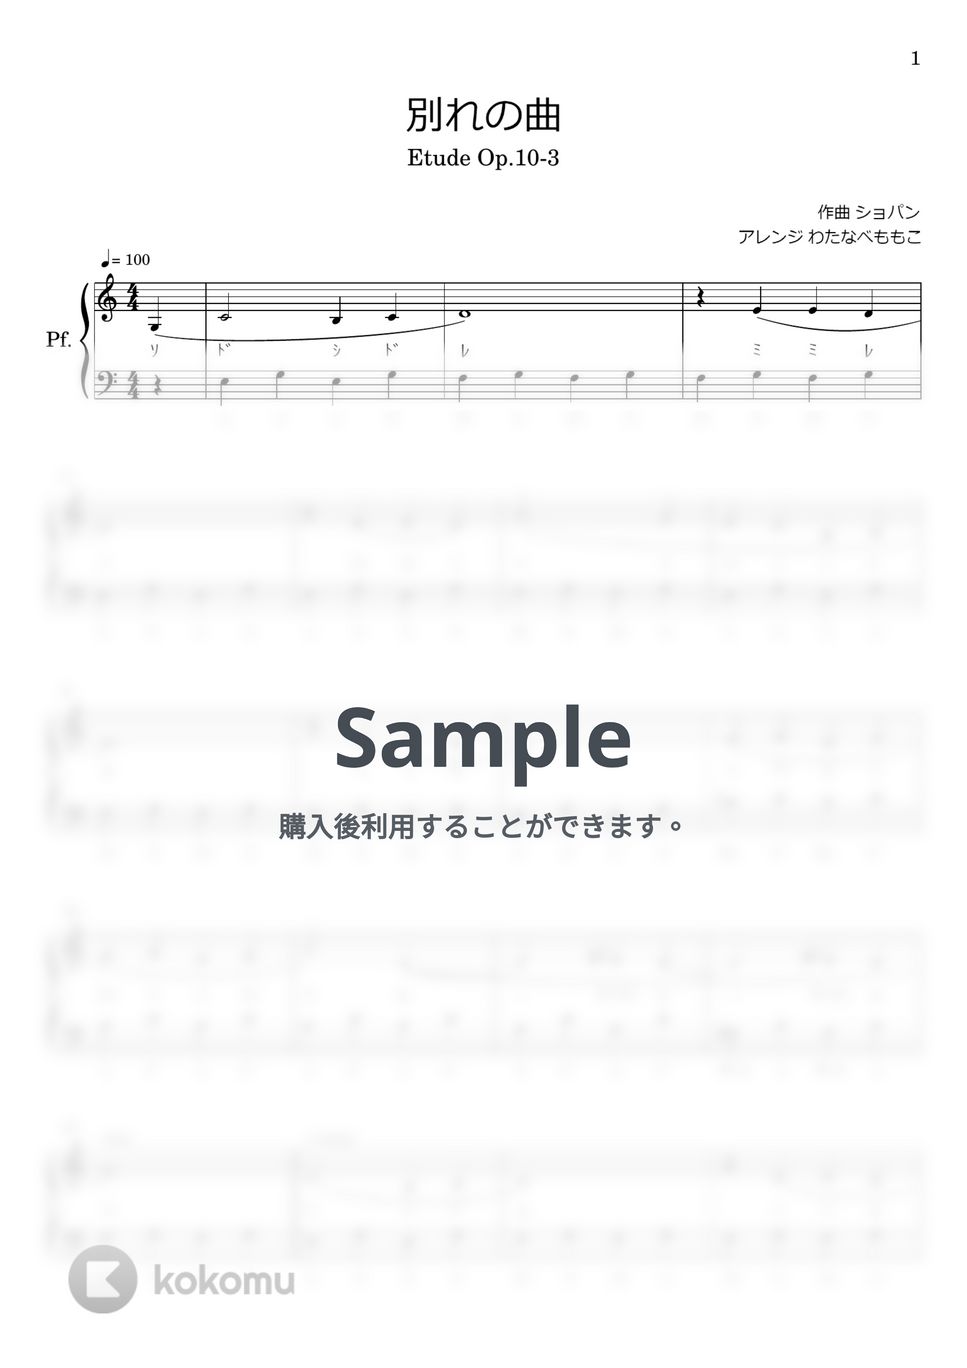 ショパン - 別れの曲 (Op.10 No.3) by わたなべももこ